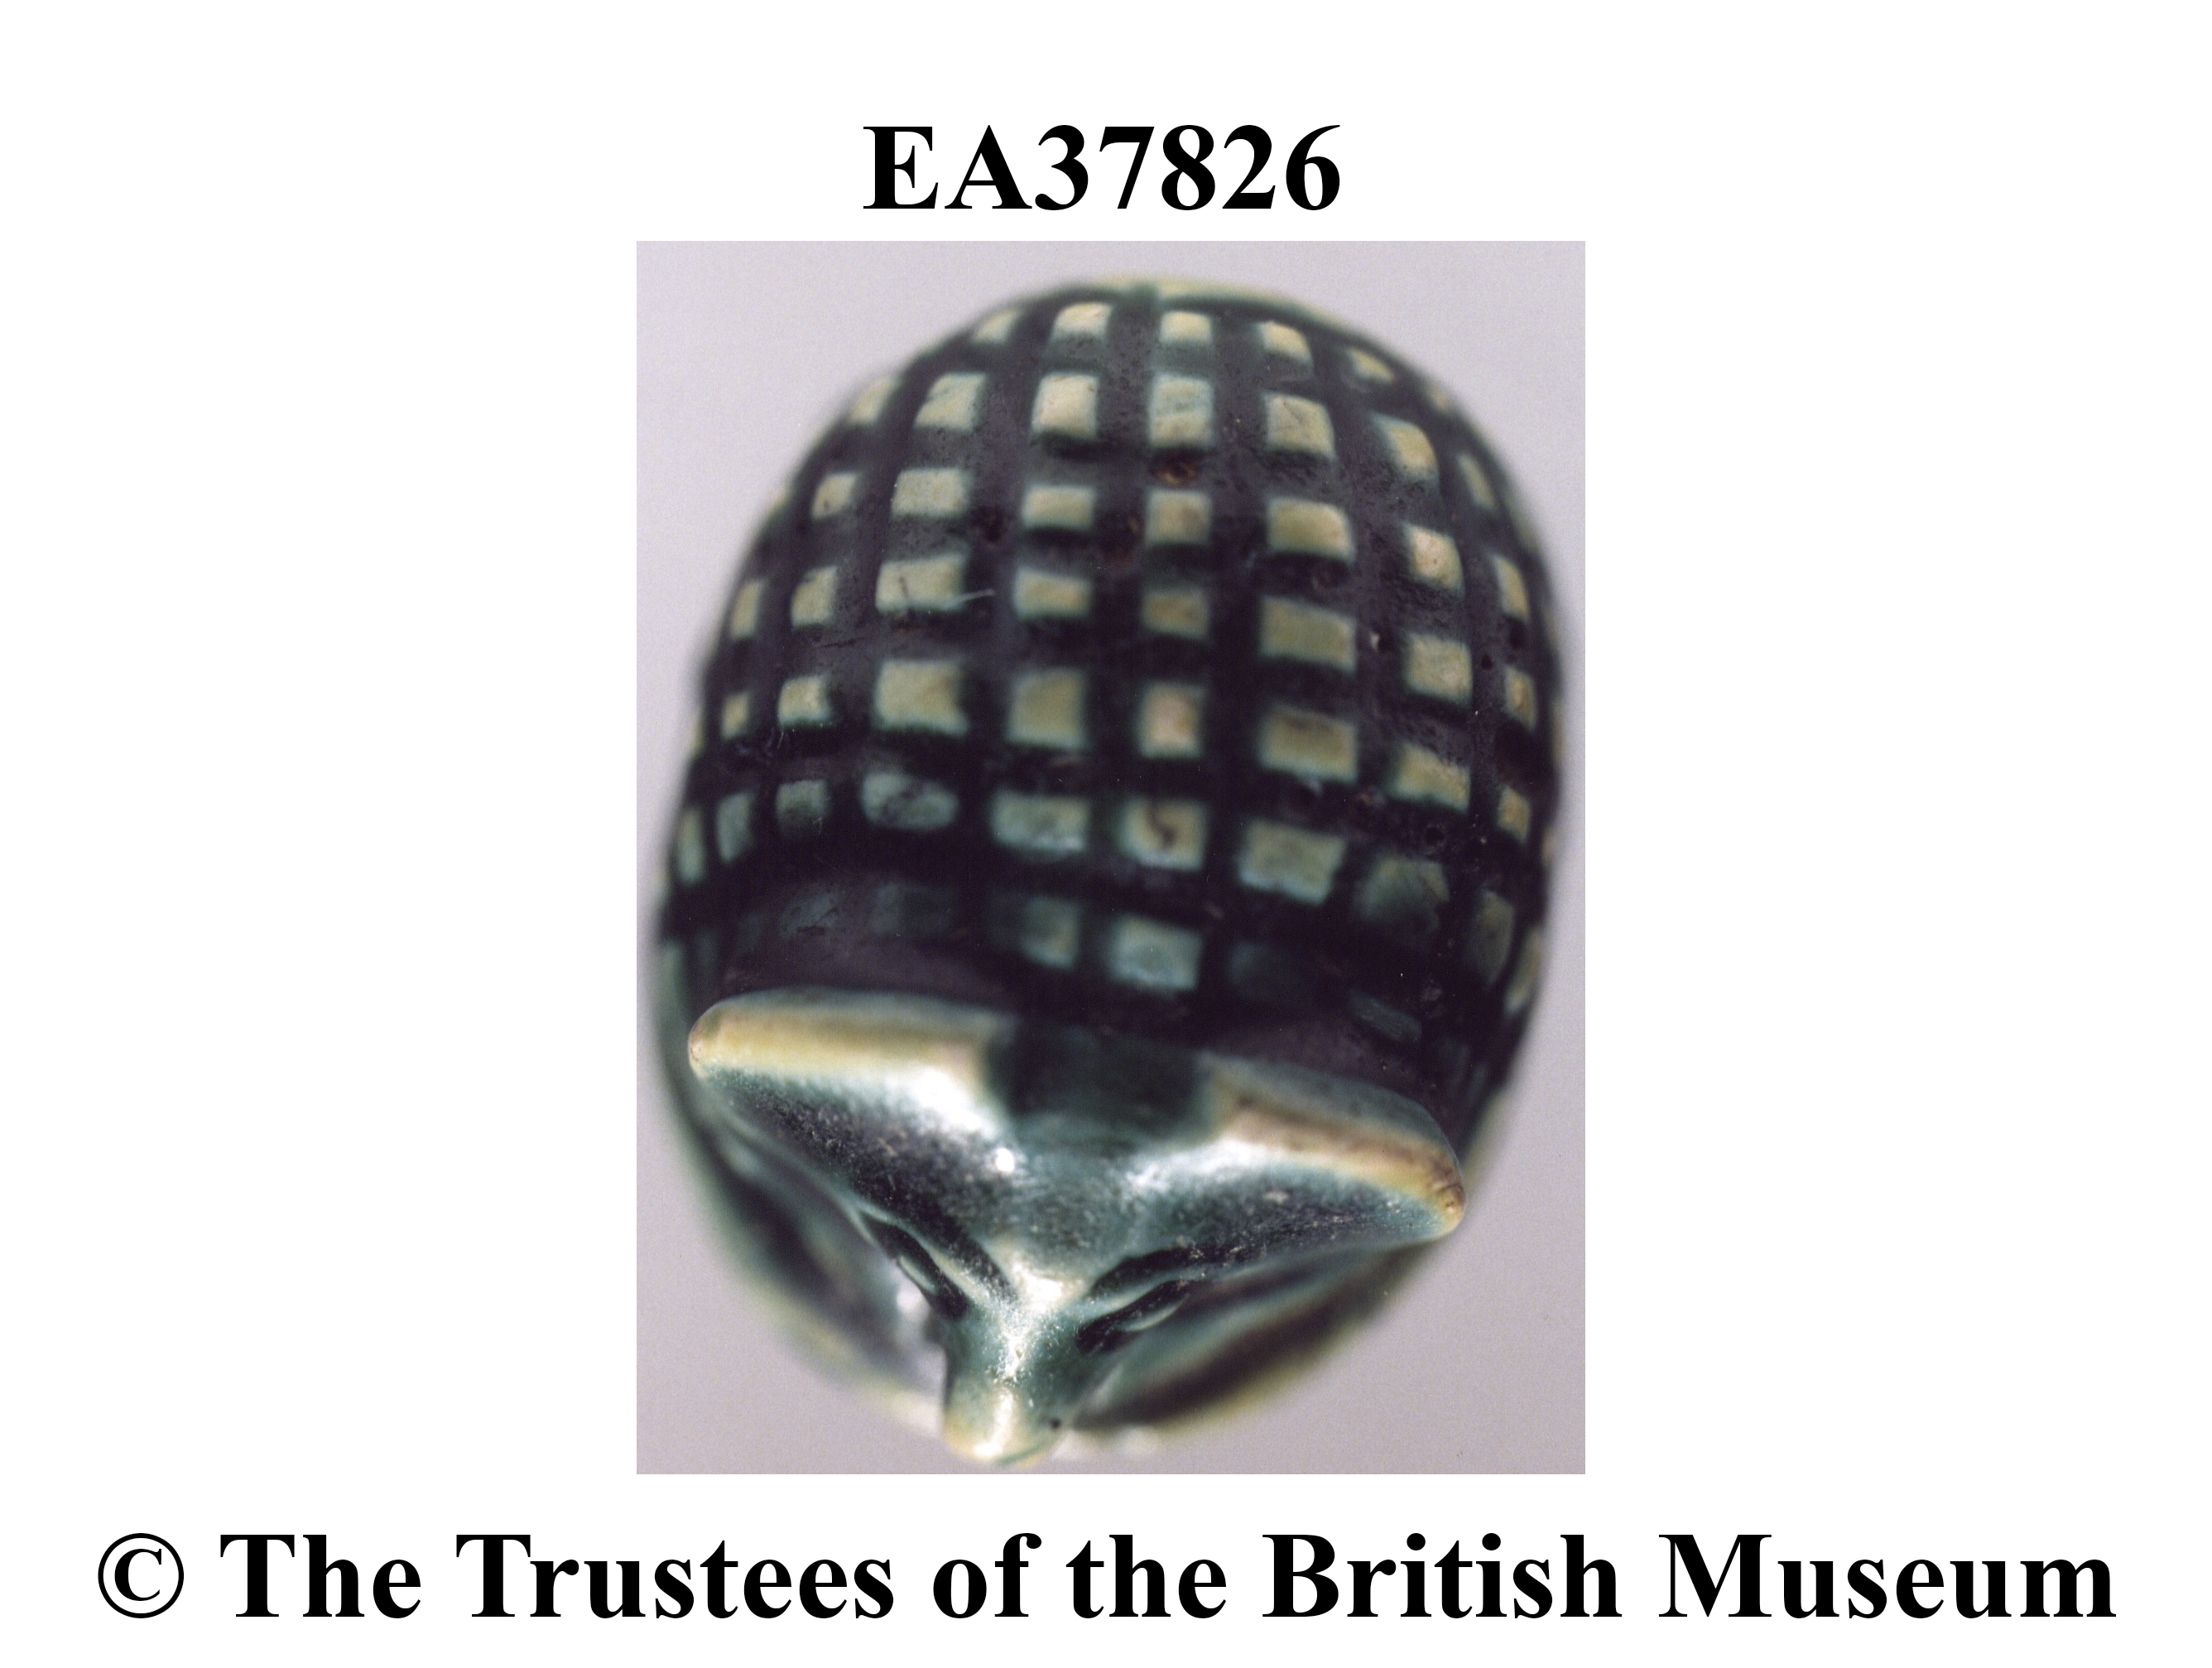 Image for: Stamp amulet of a hedgehog